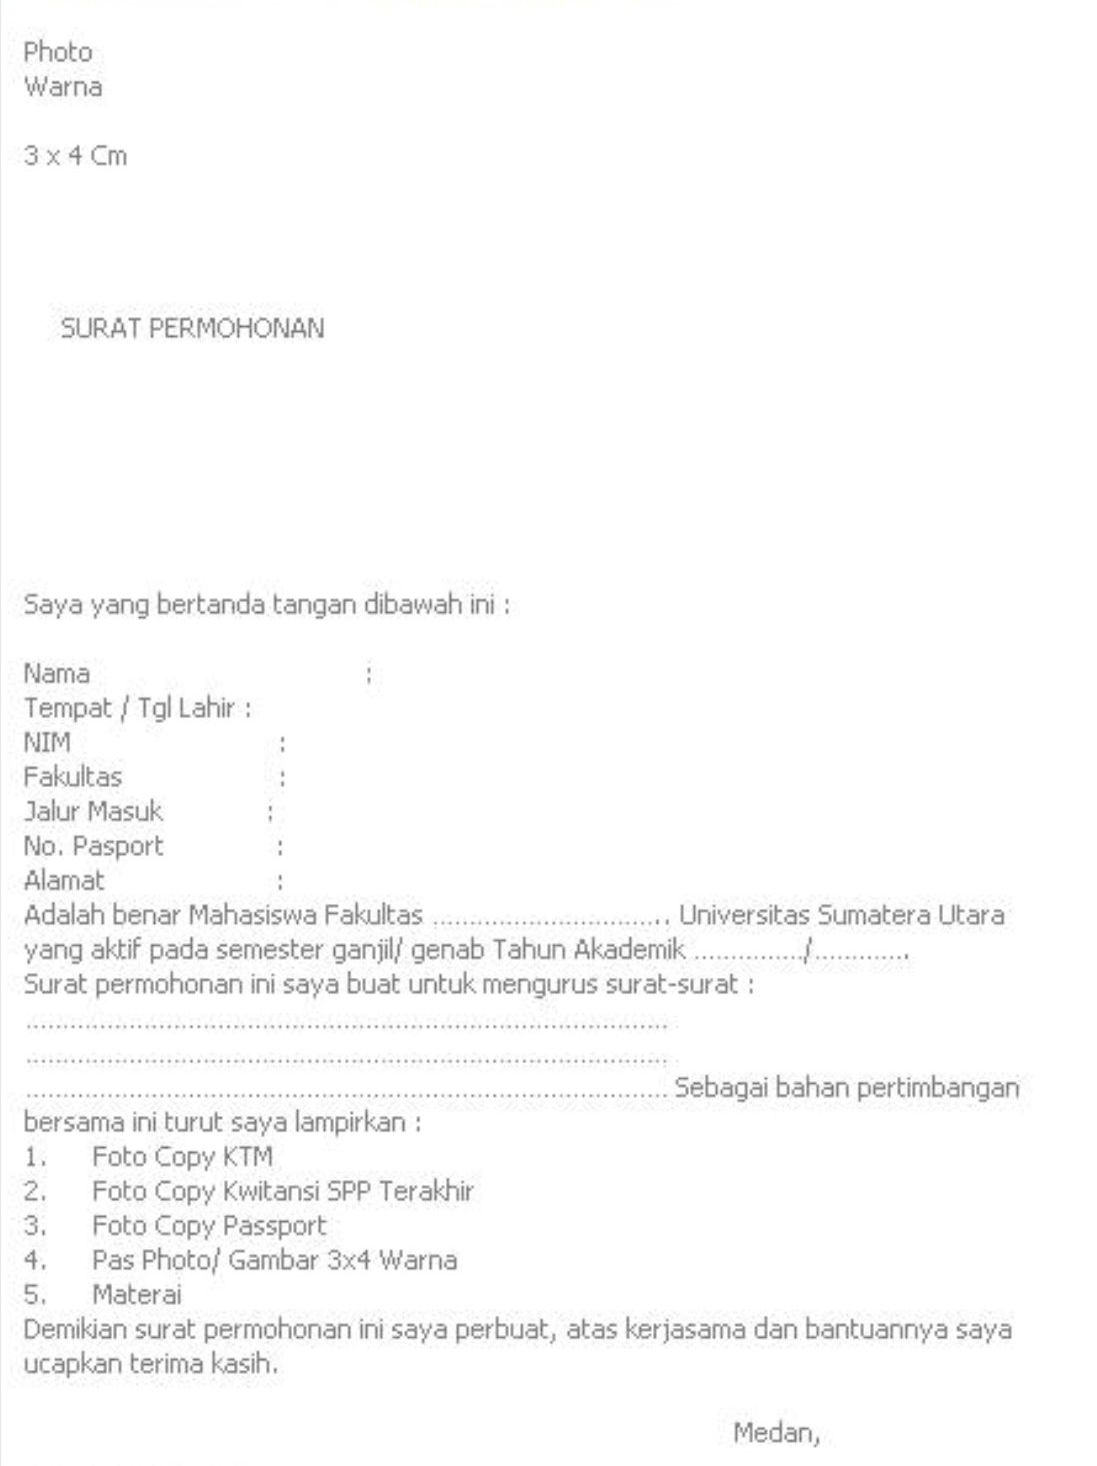 PKPMI Cawangan Medan: Surat Permohonan Urusan Imigrasi.